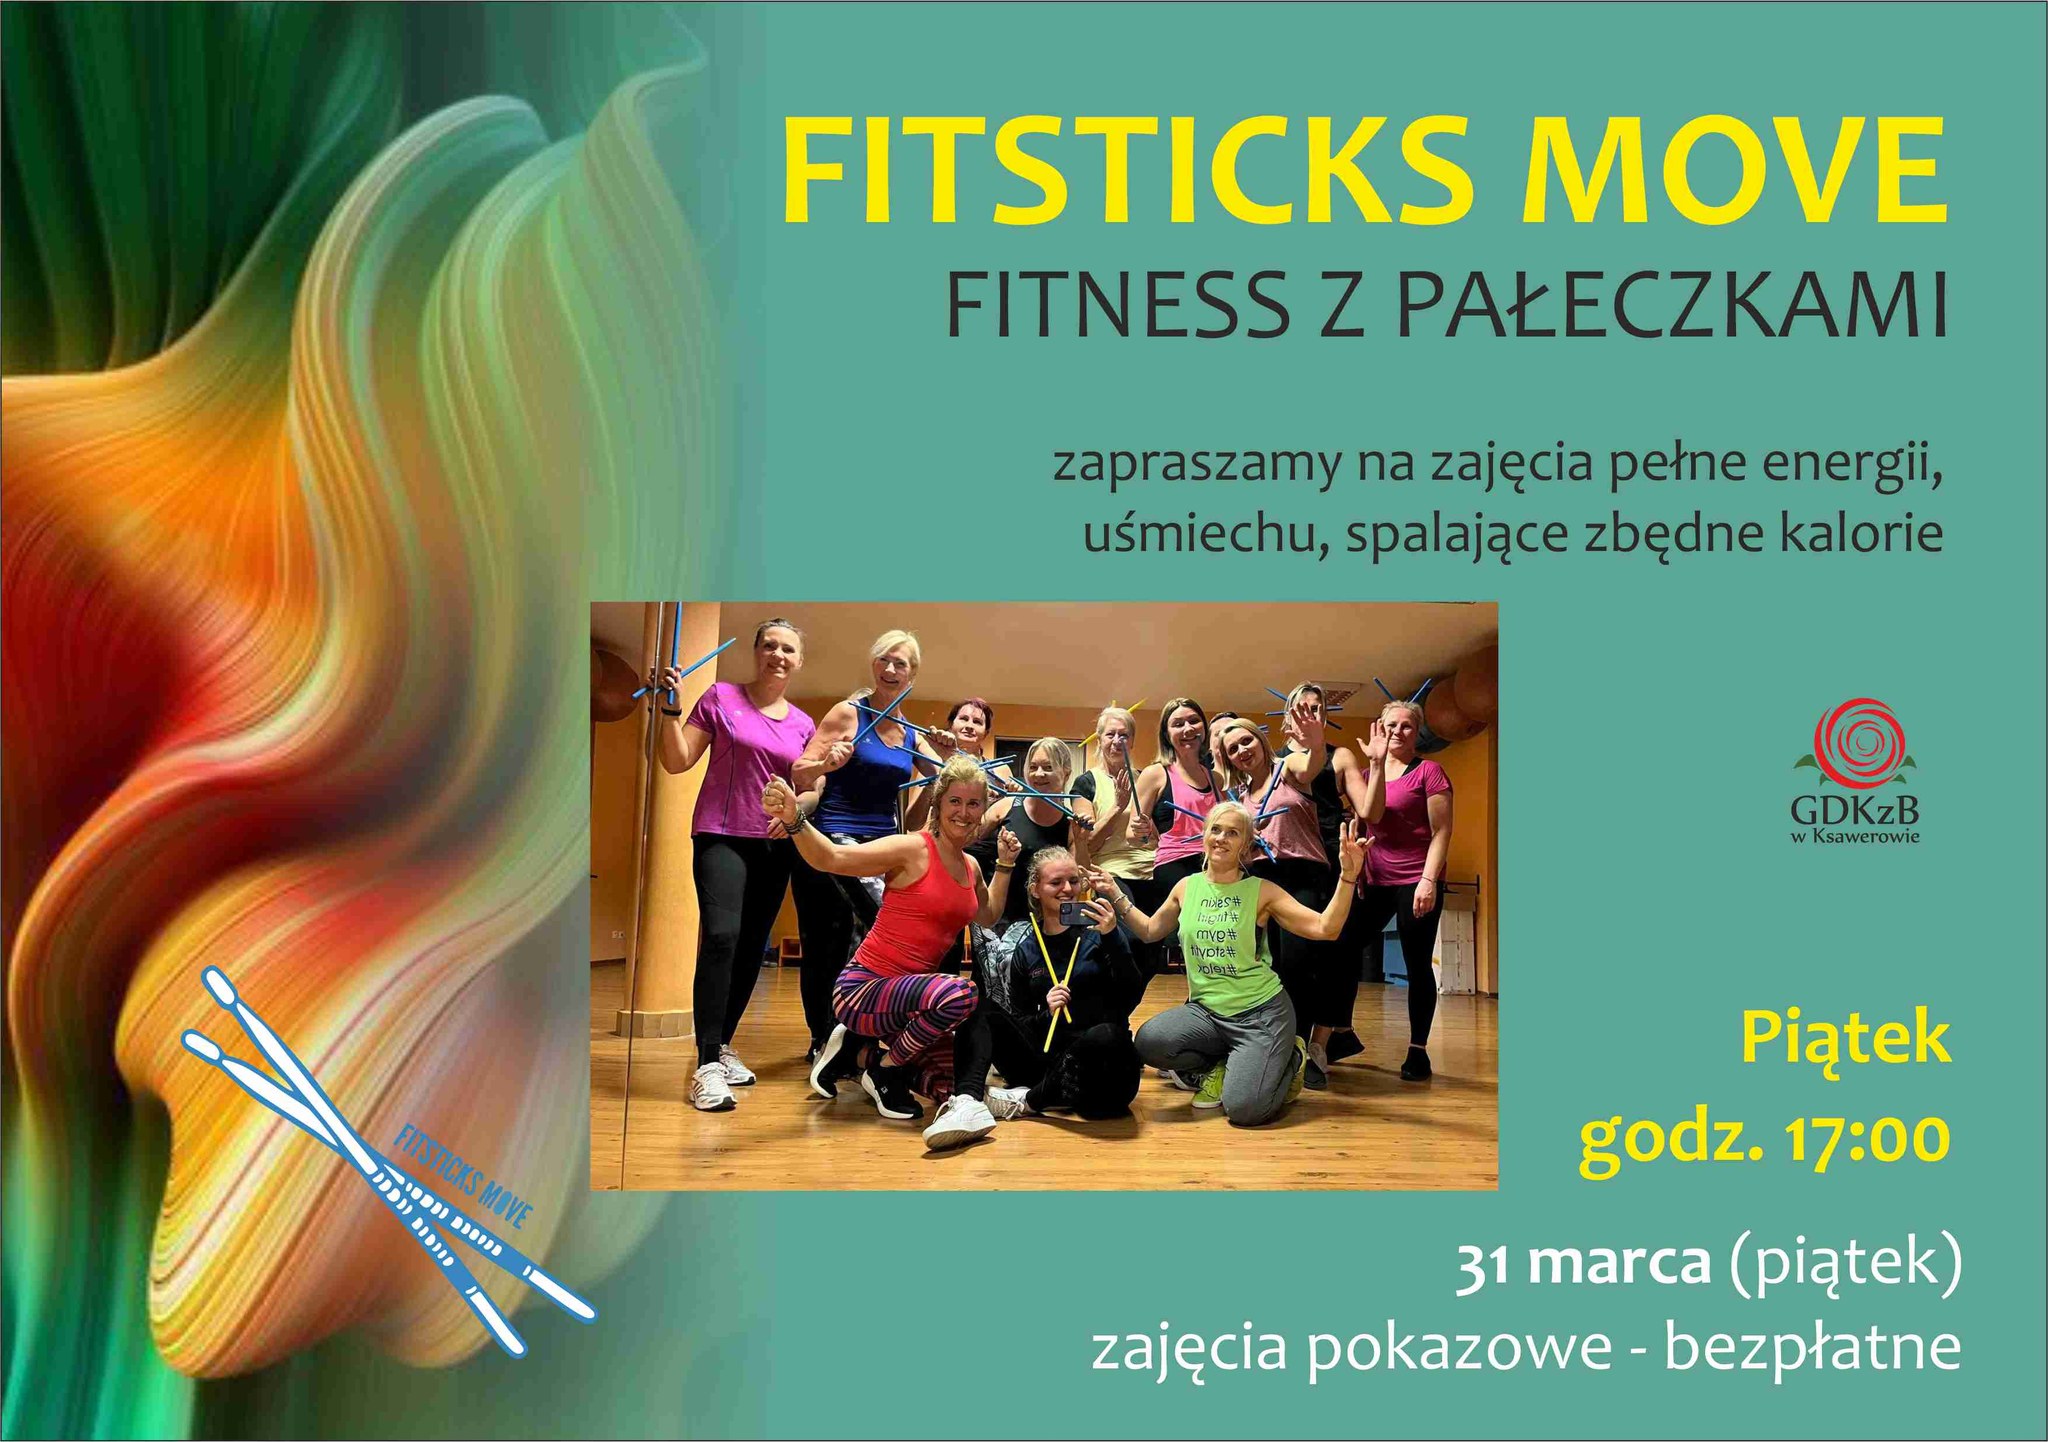 Fitsticks move fitness z pałeczkami. Zapraszamy na zajęcia pełne energii, uśmiechu, spalające zbędne kalorie. piątek godz. 17:00. 31 marca (piątek) zajęcia pokazowe bezpłatne